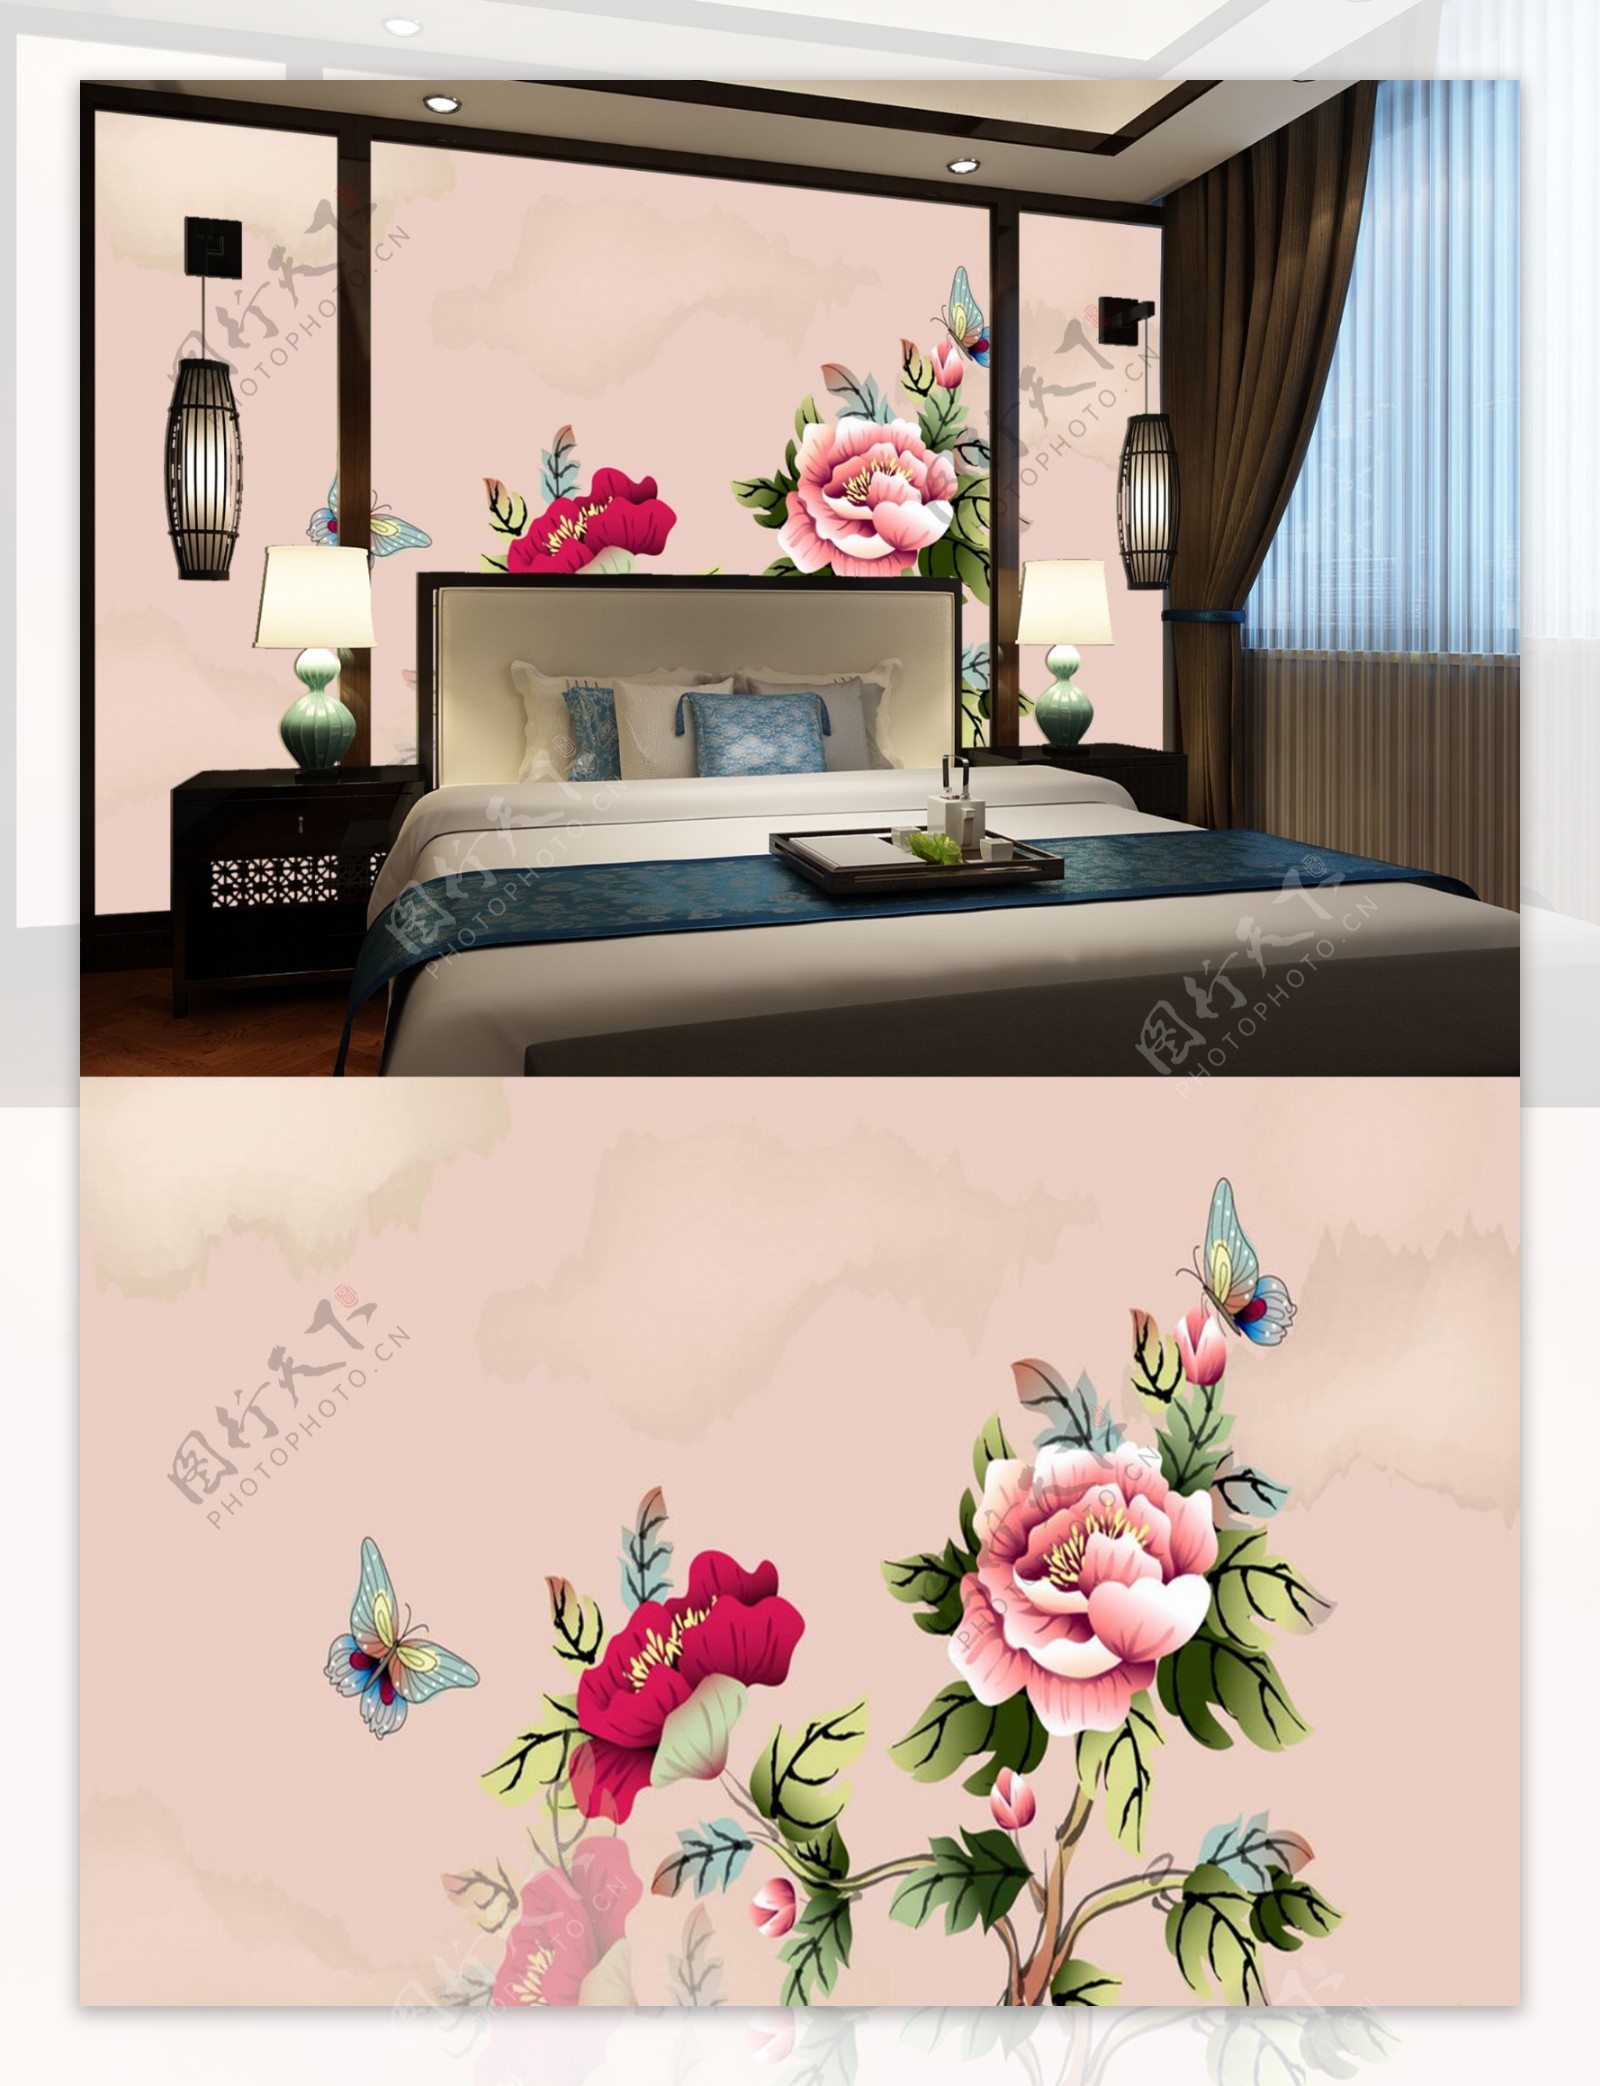 中式粉红背景牡丹水墨画卧室背景墙